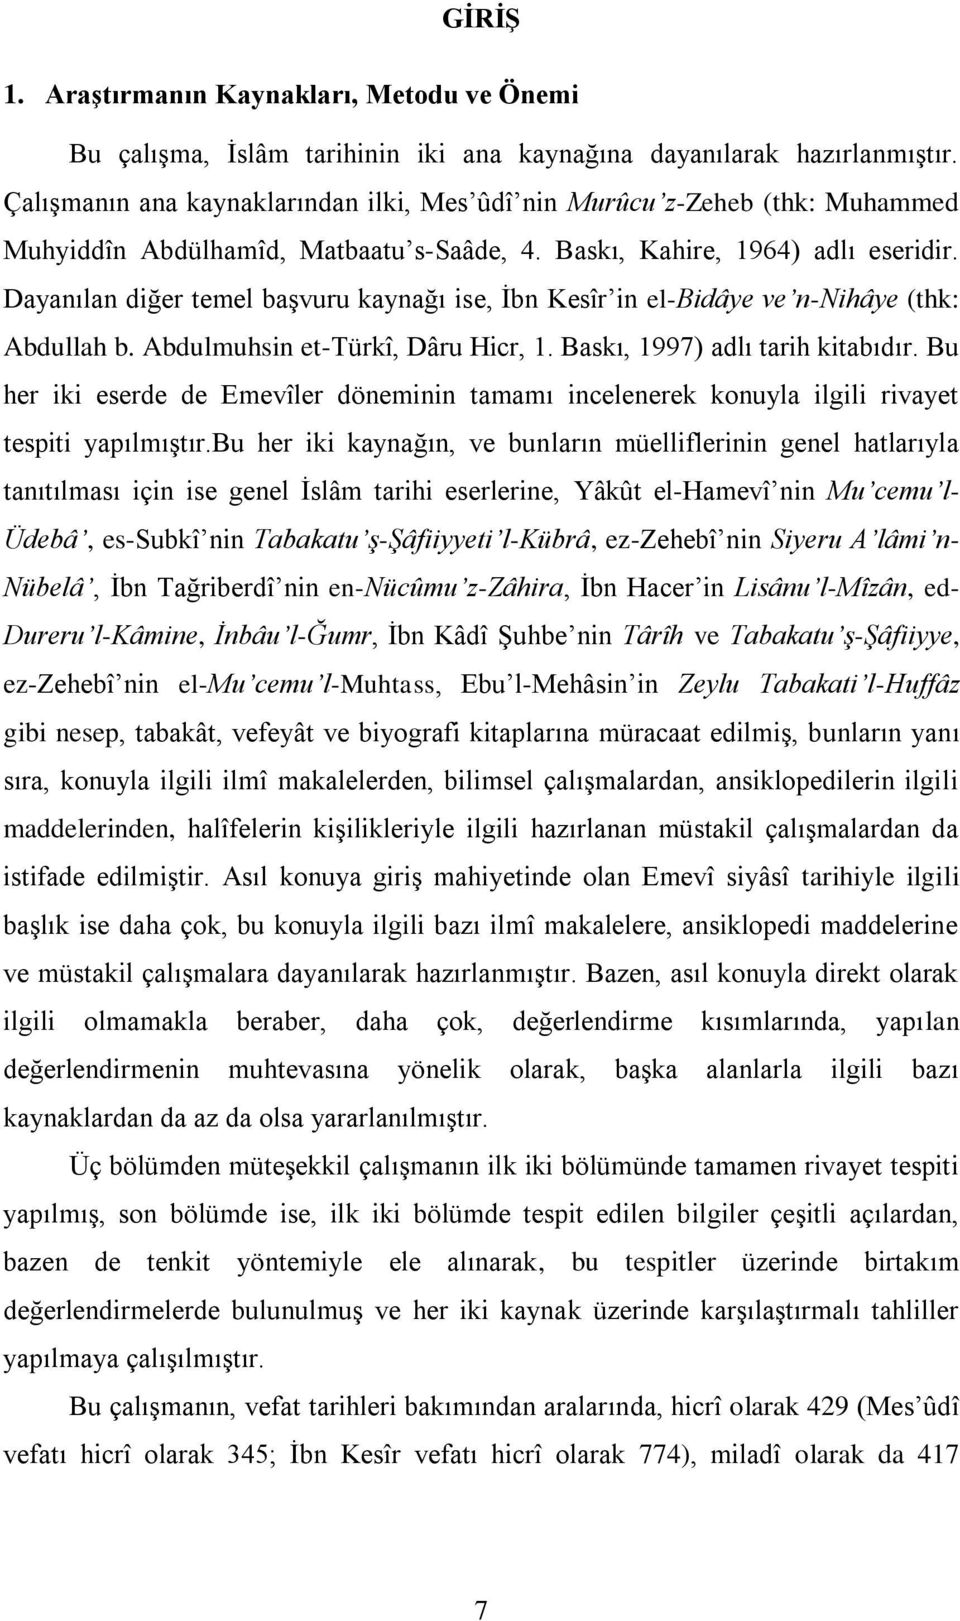 Dayanılan diğer temel başvuru kaynağı ise, İbn Kesîr in el-bidâye ve n-nihâye (thk: Abdullah b. Abdulmuhsin et-türkî, Dâru Hicr, 1. Baskı, 1997) adlı tarih kitabıdır.